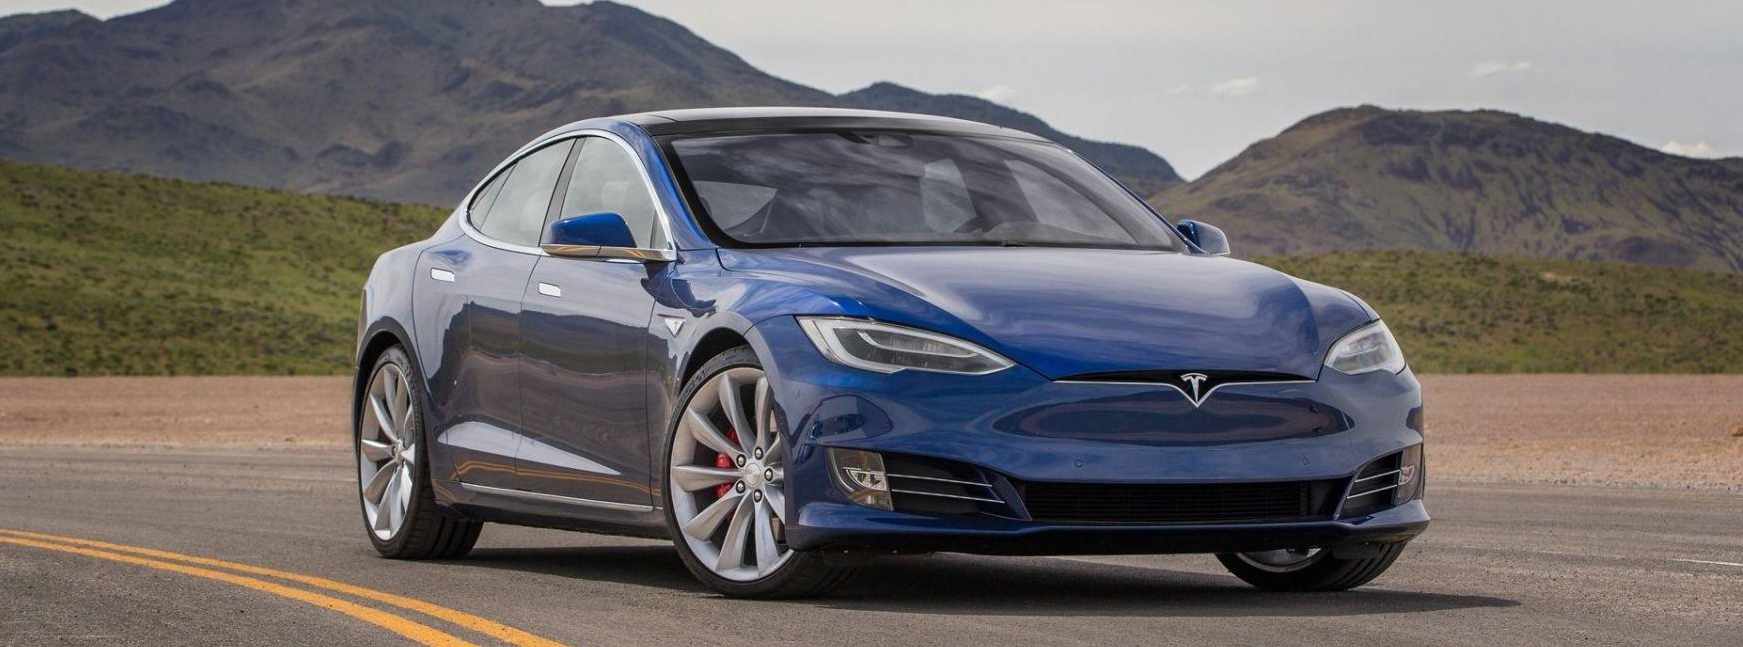 Nuevos detalles del inminente restyling de los Tesla Model S y Model X: nuevo salpicadero, cámara interior…